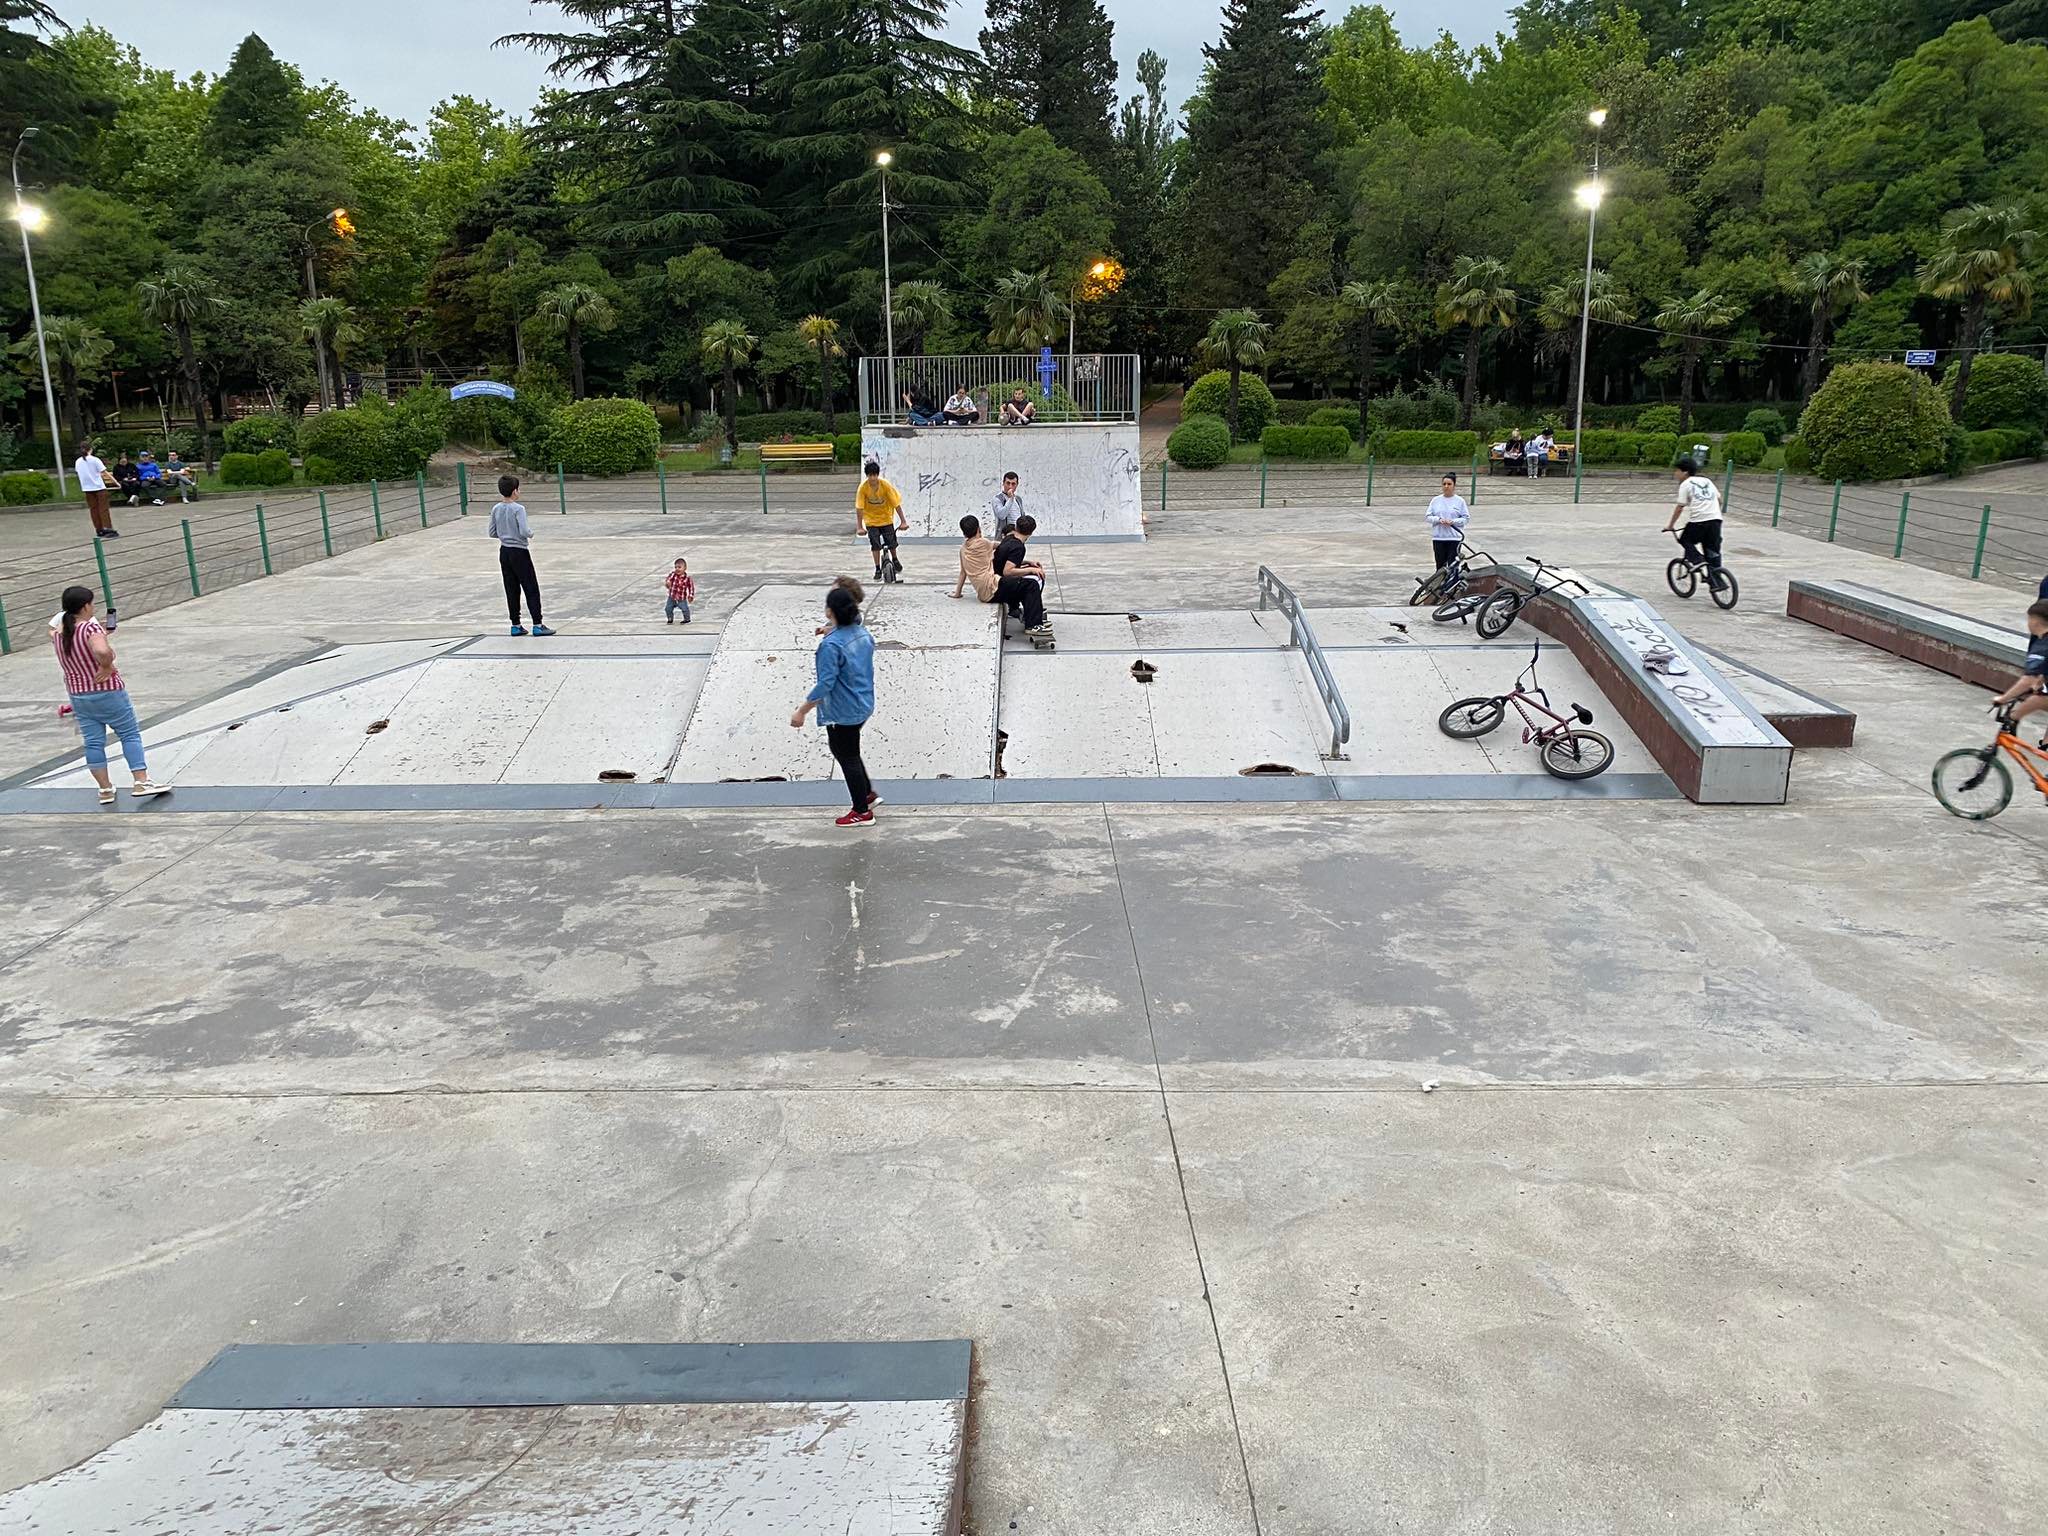 ქუთაისში, მოსწავლე ახალგაზრდობის პარკში არსებული სკეიტ პარკი მოზარდებისთვის საფრთხეს წარმოადგენს